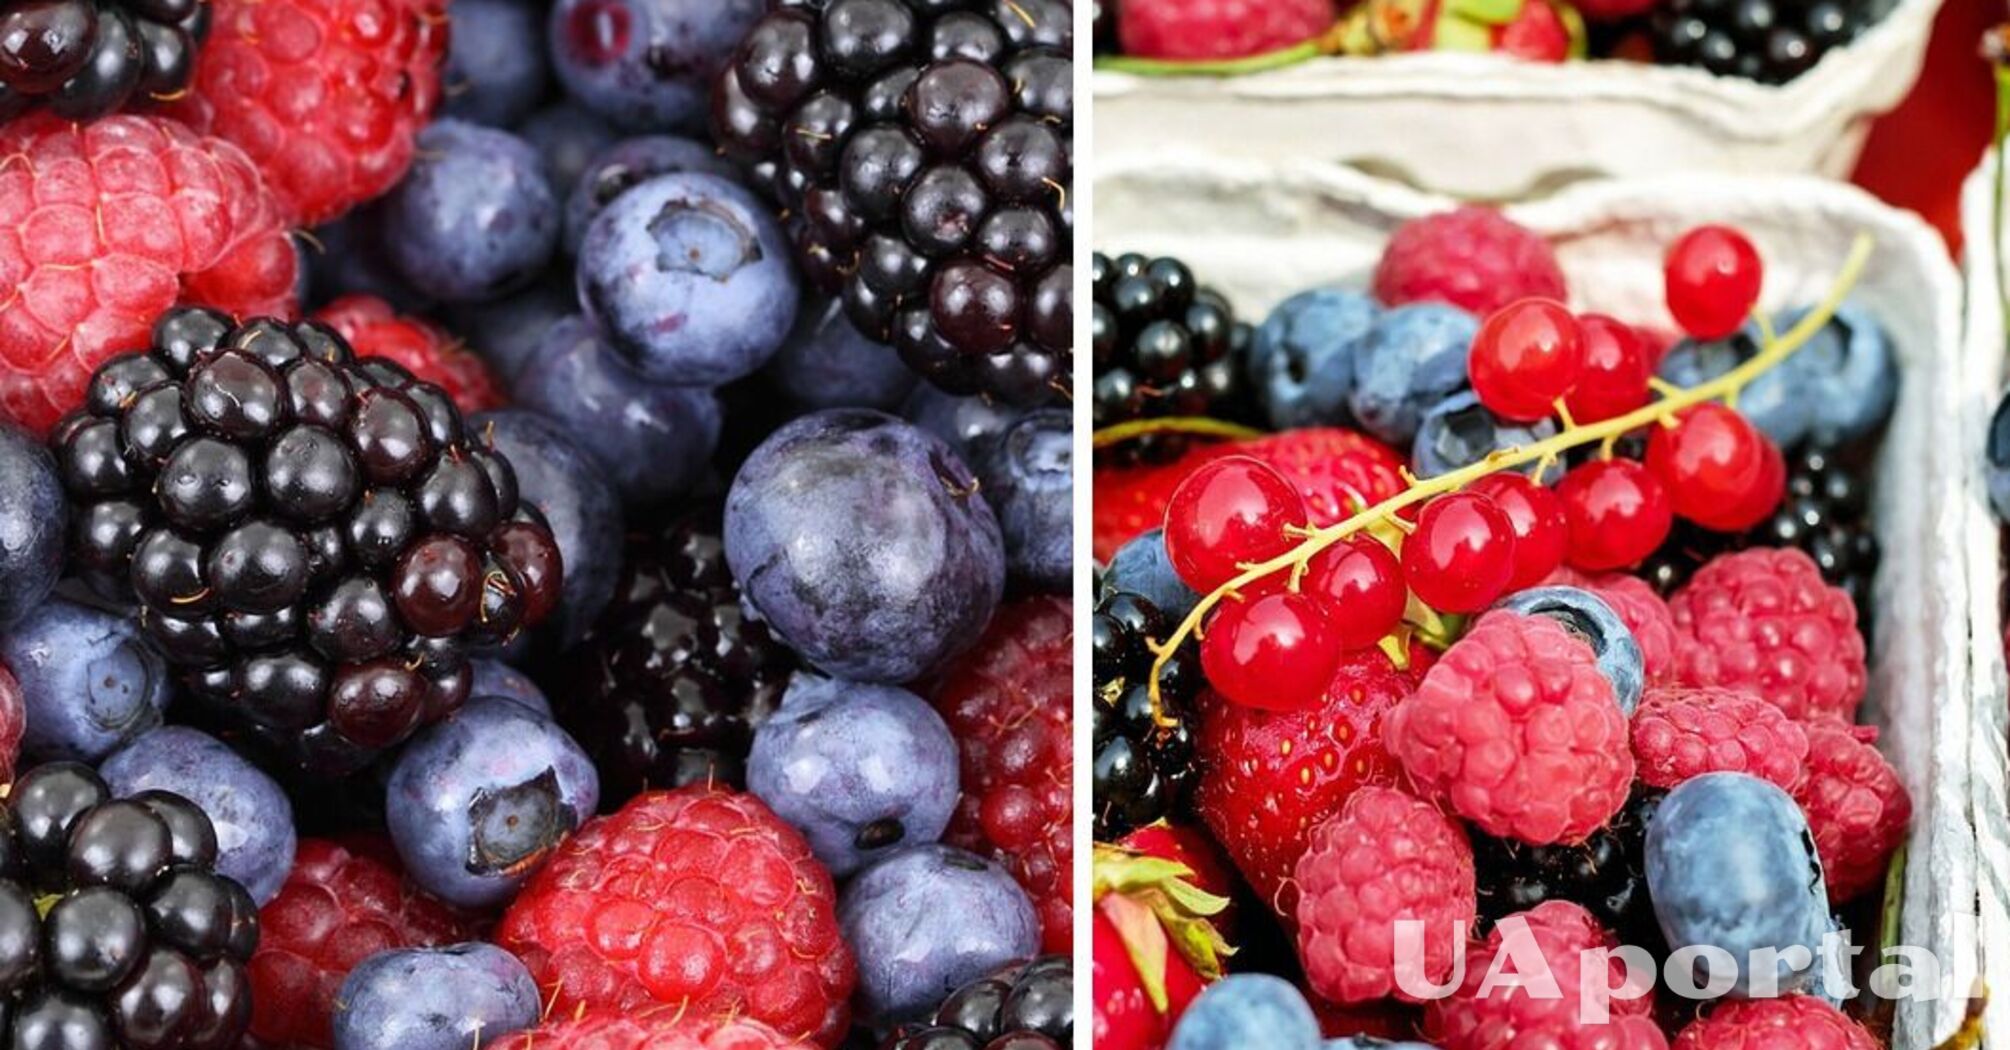 Експерти пояснили, як правильно зберігати ягоди, щоб довго залишалися свіжими